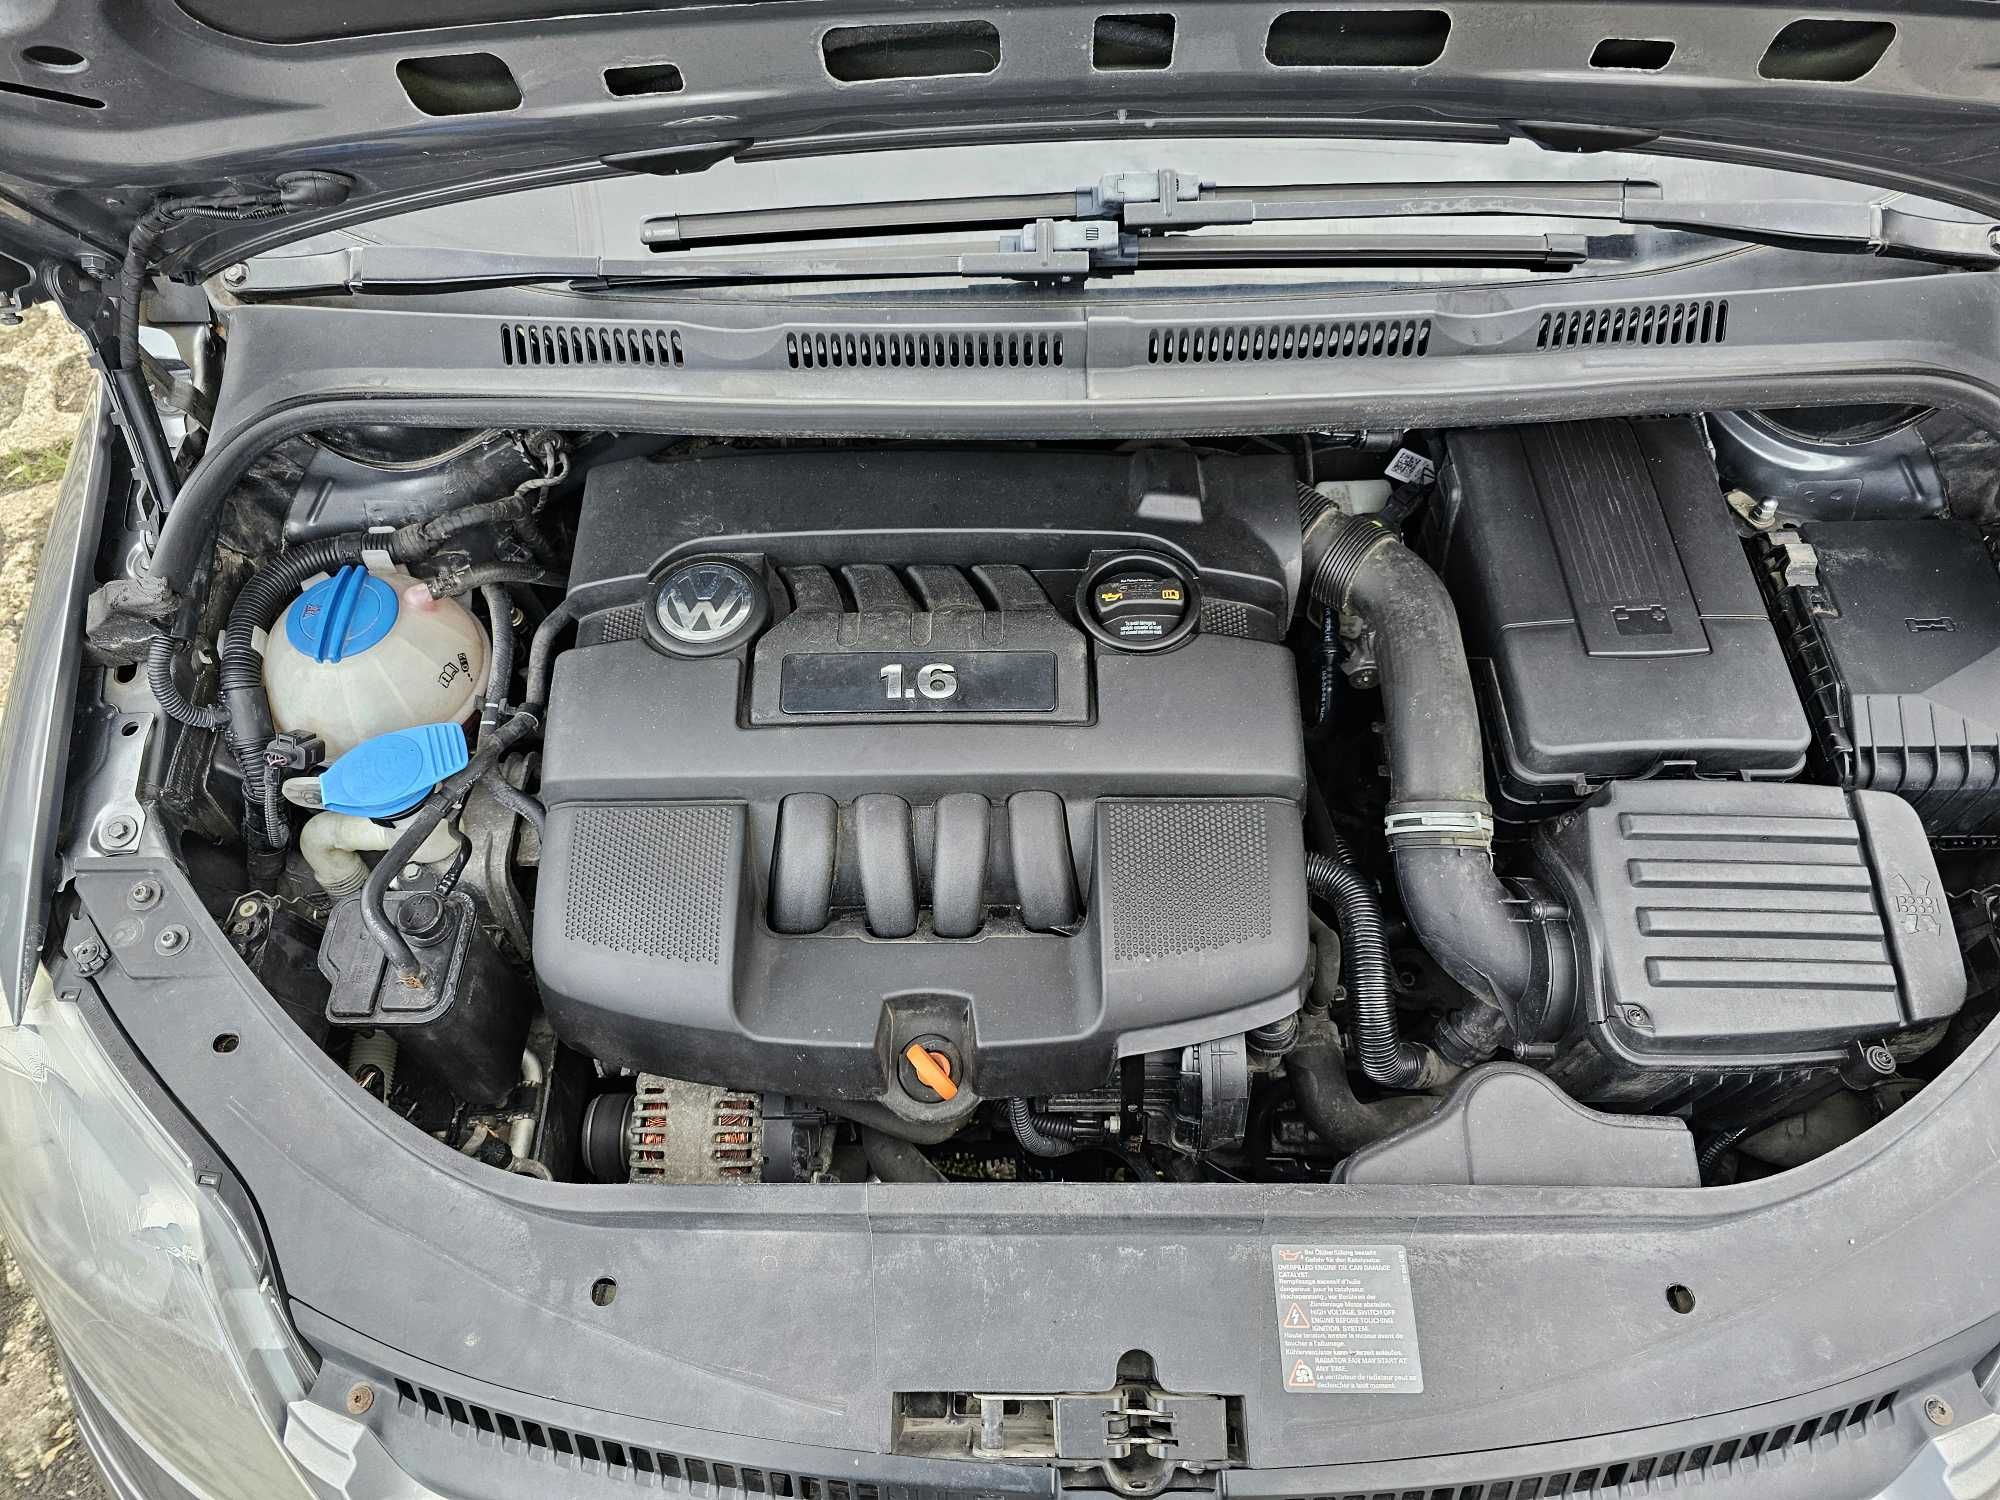 VW Golf 5 V PLUS + GORAL 2006 rok 1,6 MPI 5 d 203300 km ZAREJESTROWANY